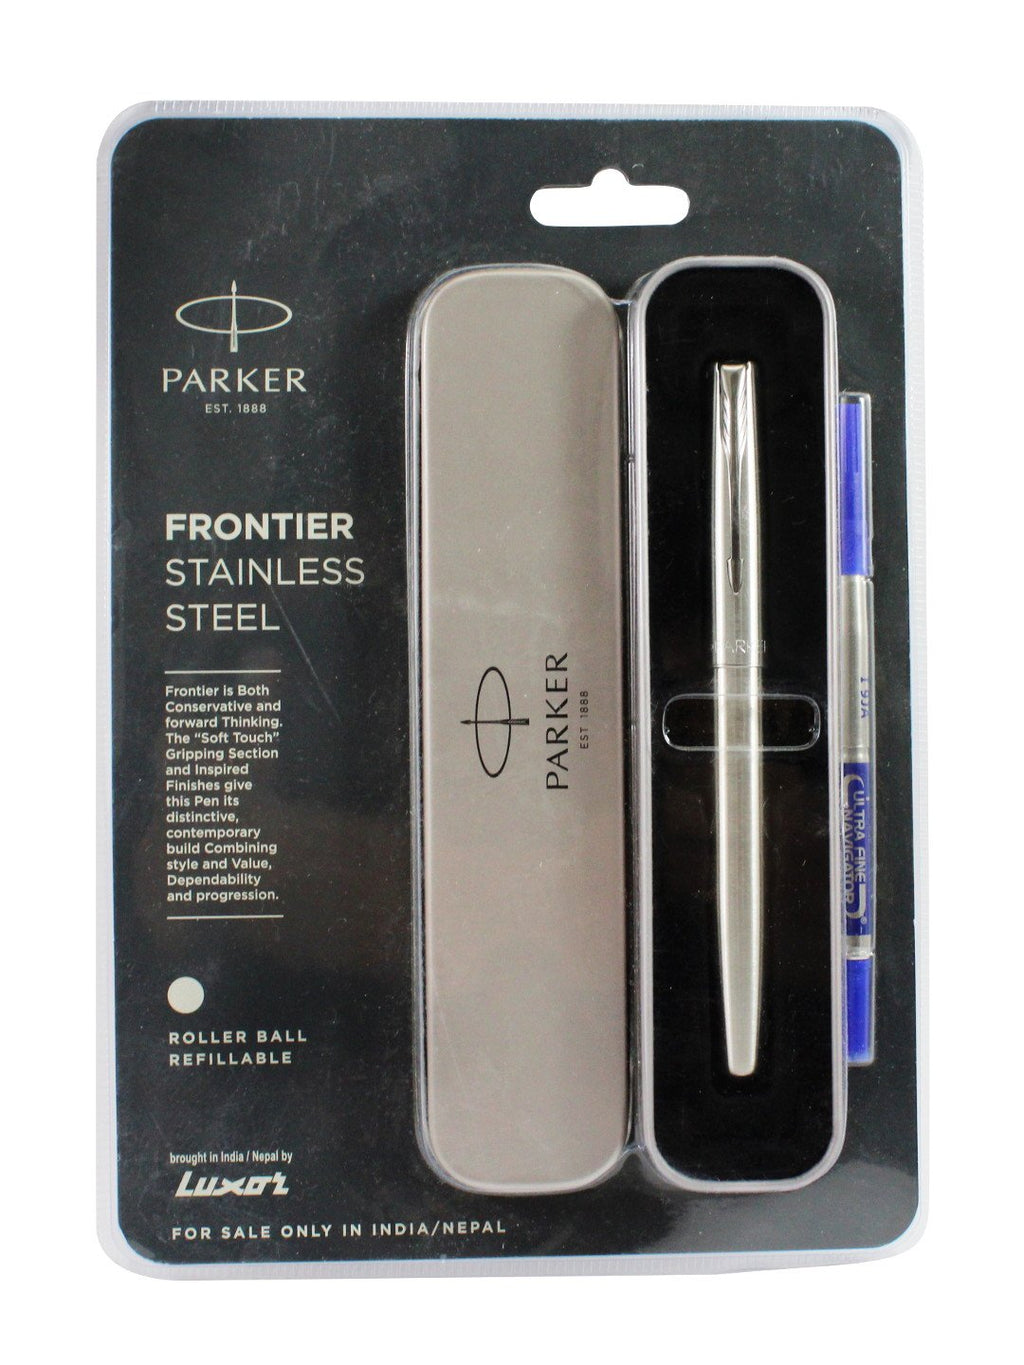 डिटेक™ पार्कर फ्रंटियर स्टेनलेस स्टील रोलर बॉल पेन रीफिल करने योग्य